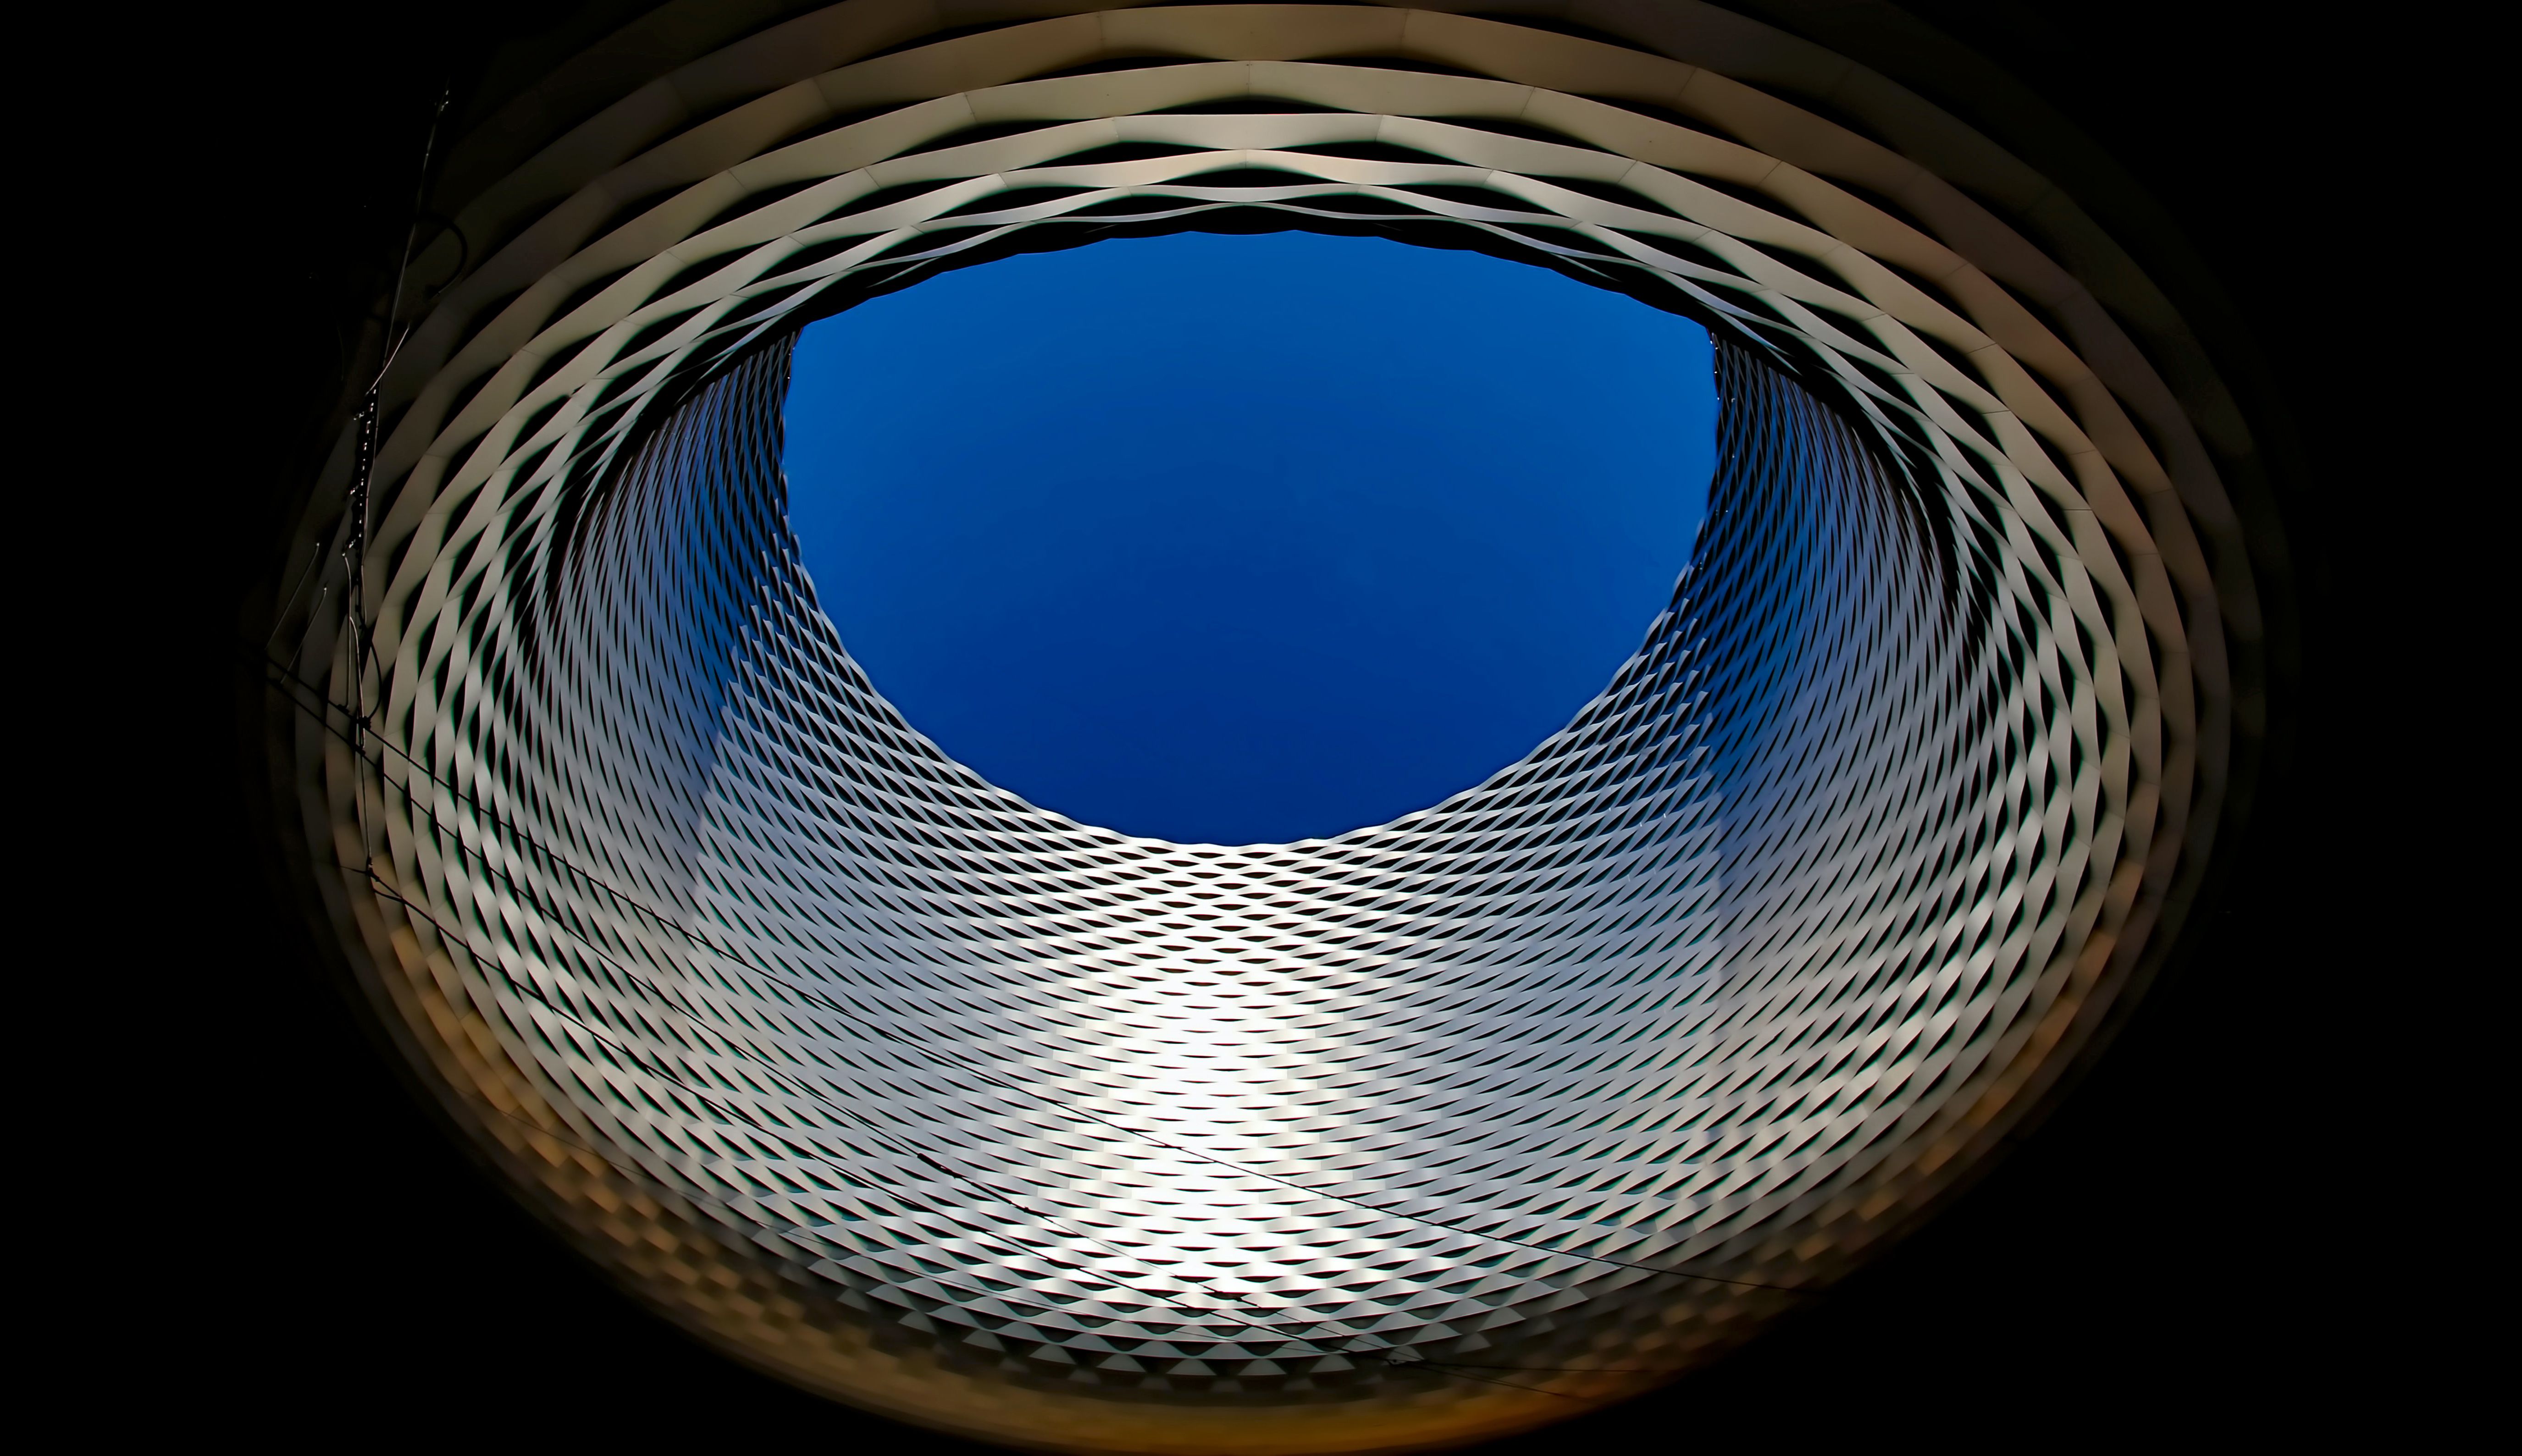 Basel exhibition center 4K Wallpaper, Modern architecture, Sky view, Dark background, Landmark, Switzerland, 5K, Architecture